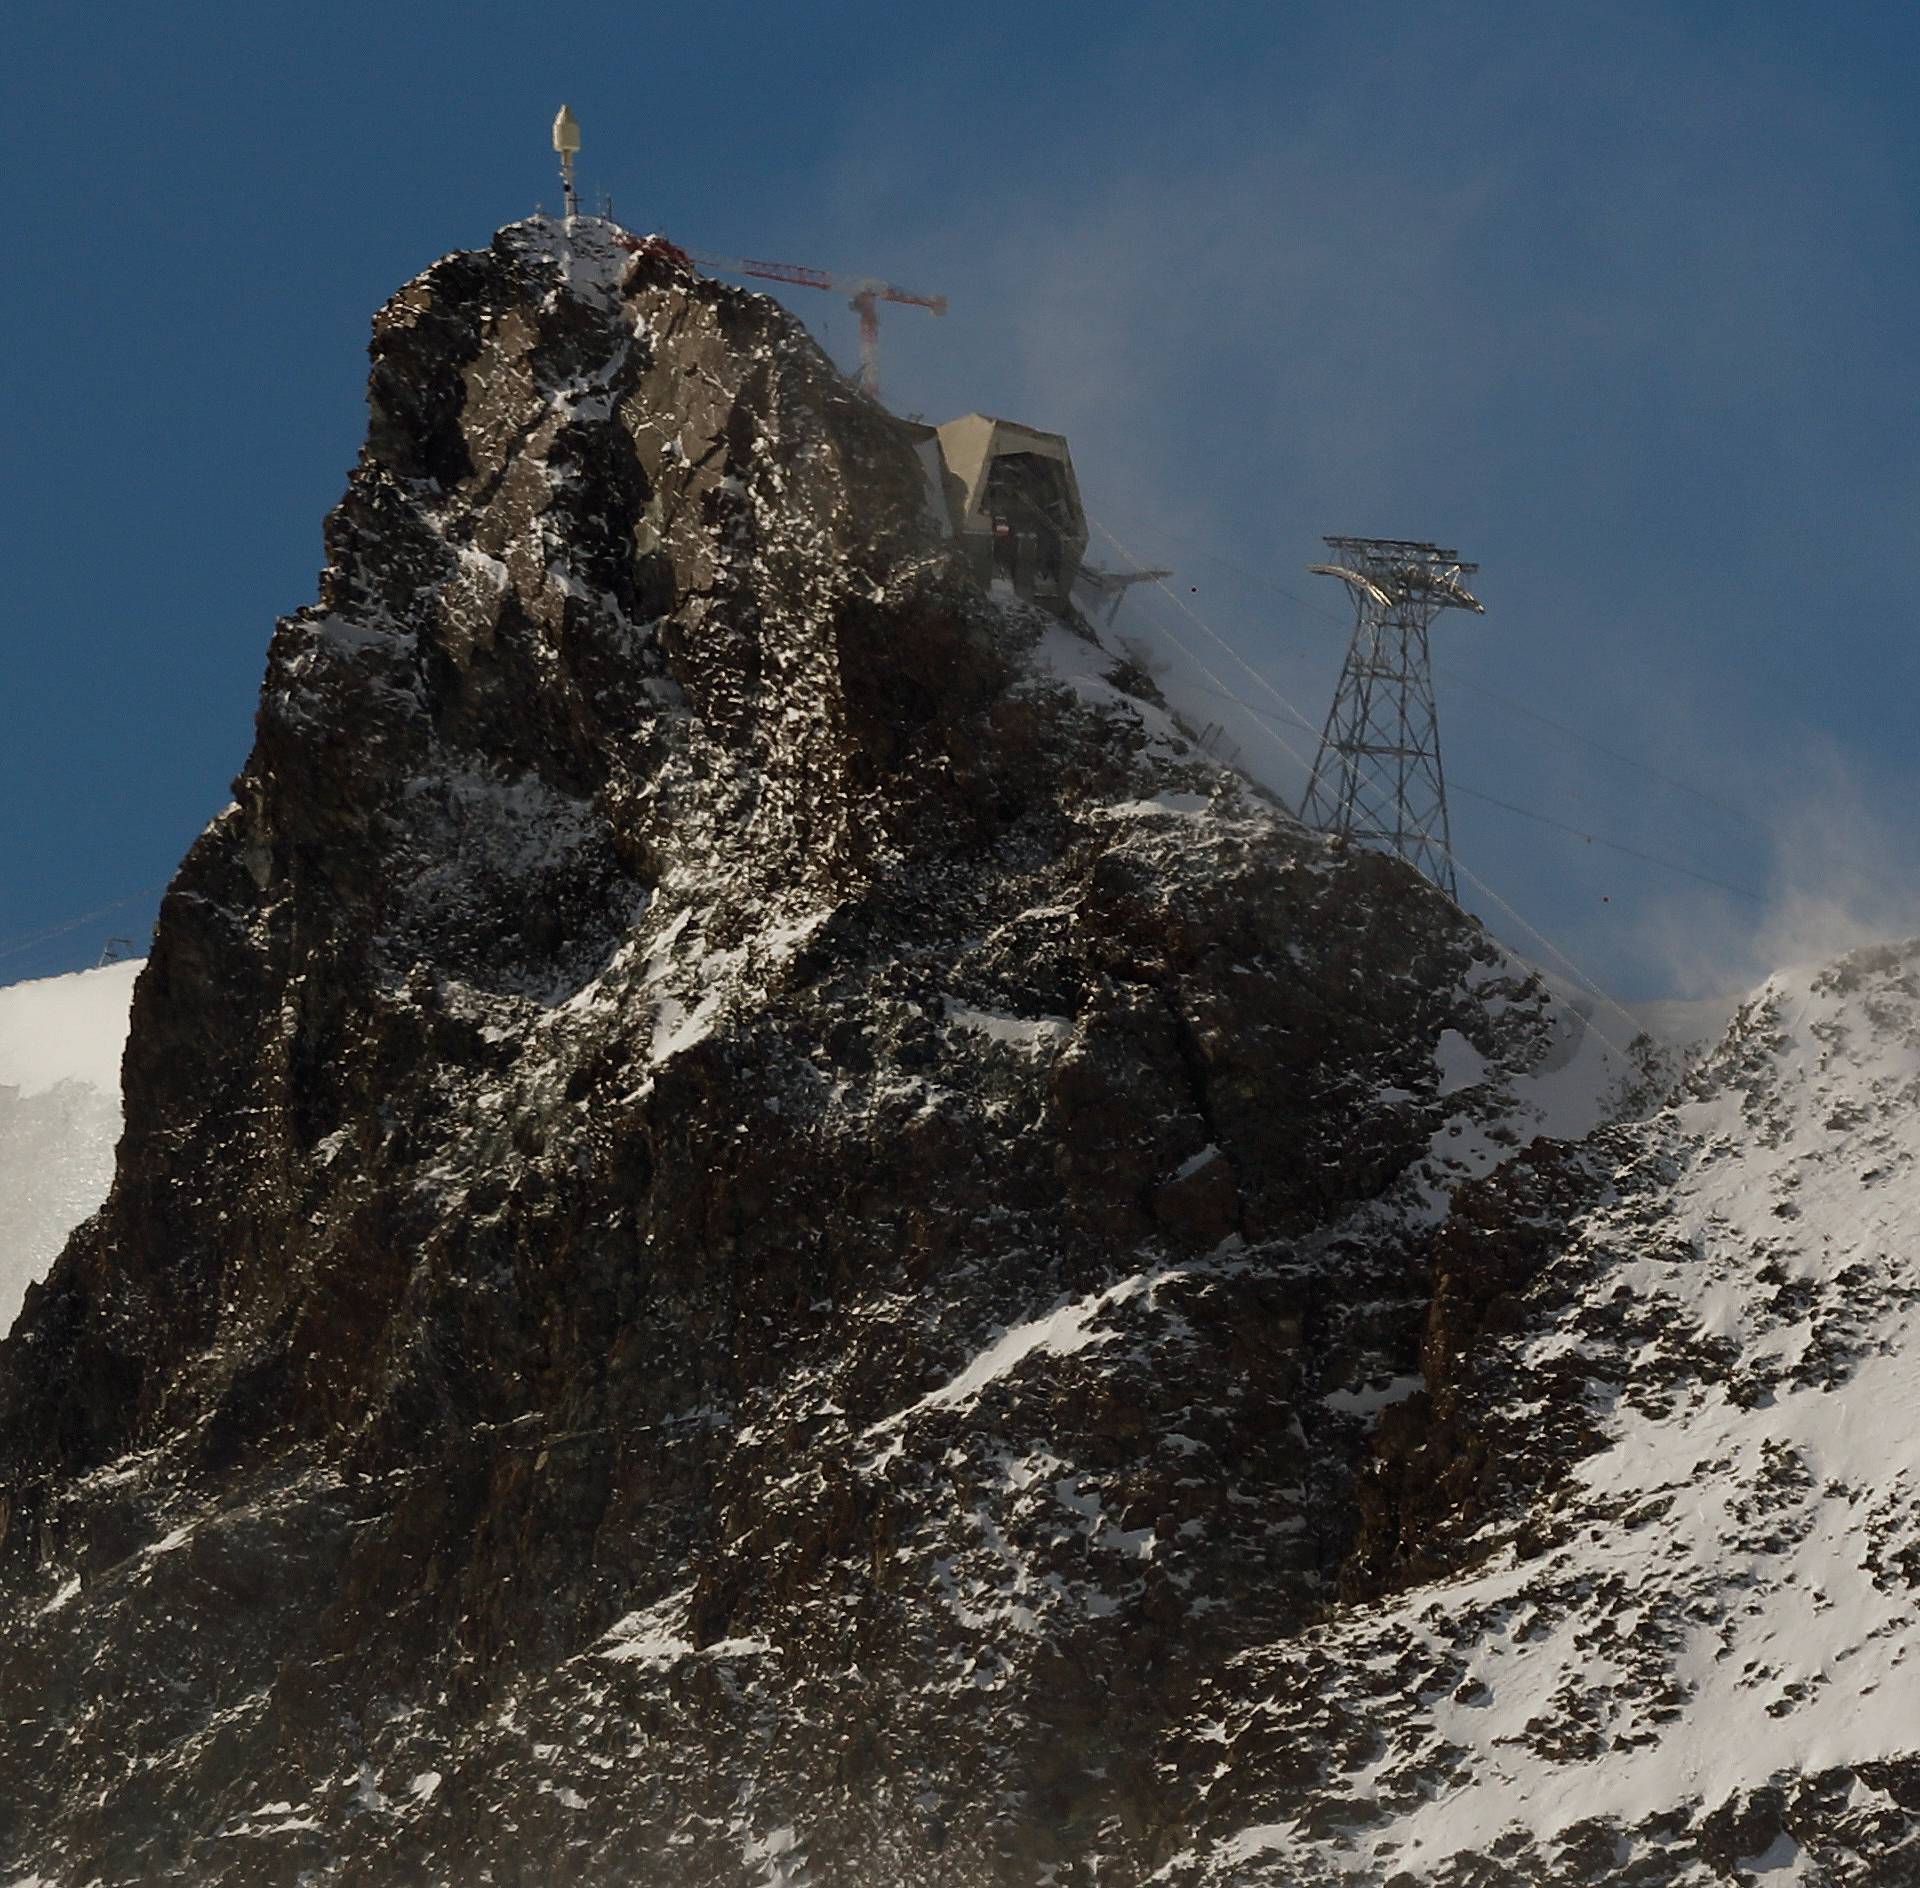 Picture shows the peak of mount Klein Matterhorn near Zermatt